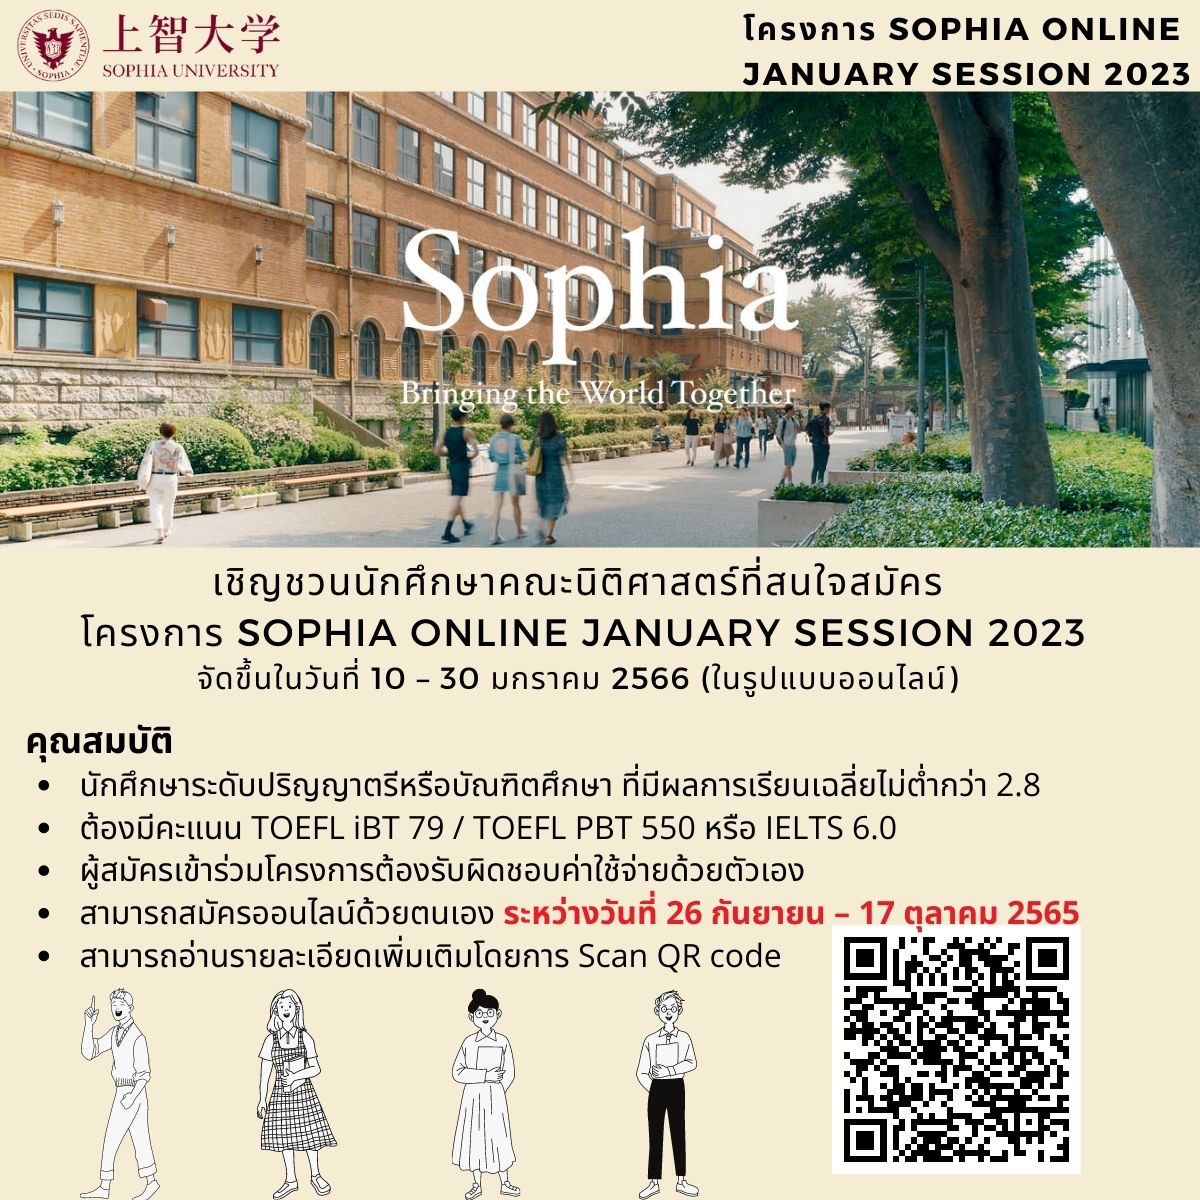 ประชาสัมพันธ์โครงการ Sophia Online January Session 2023 